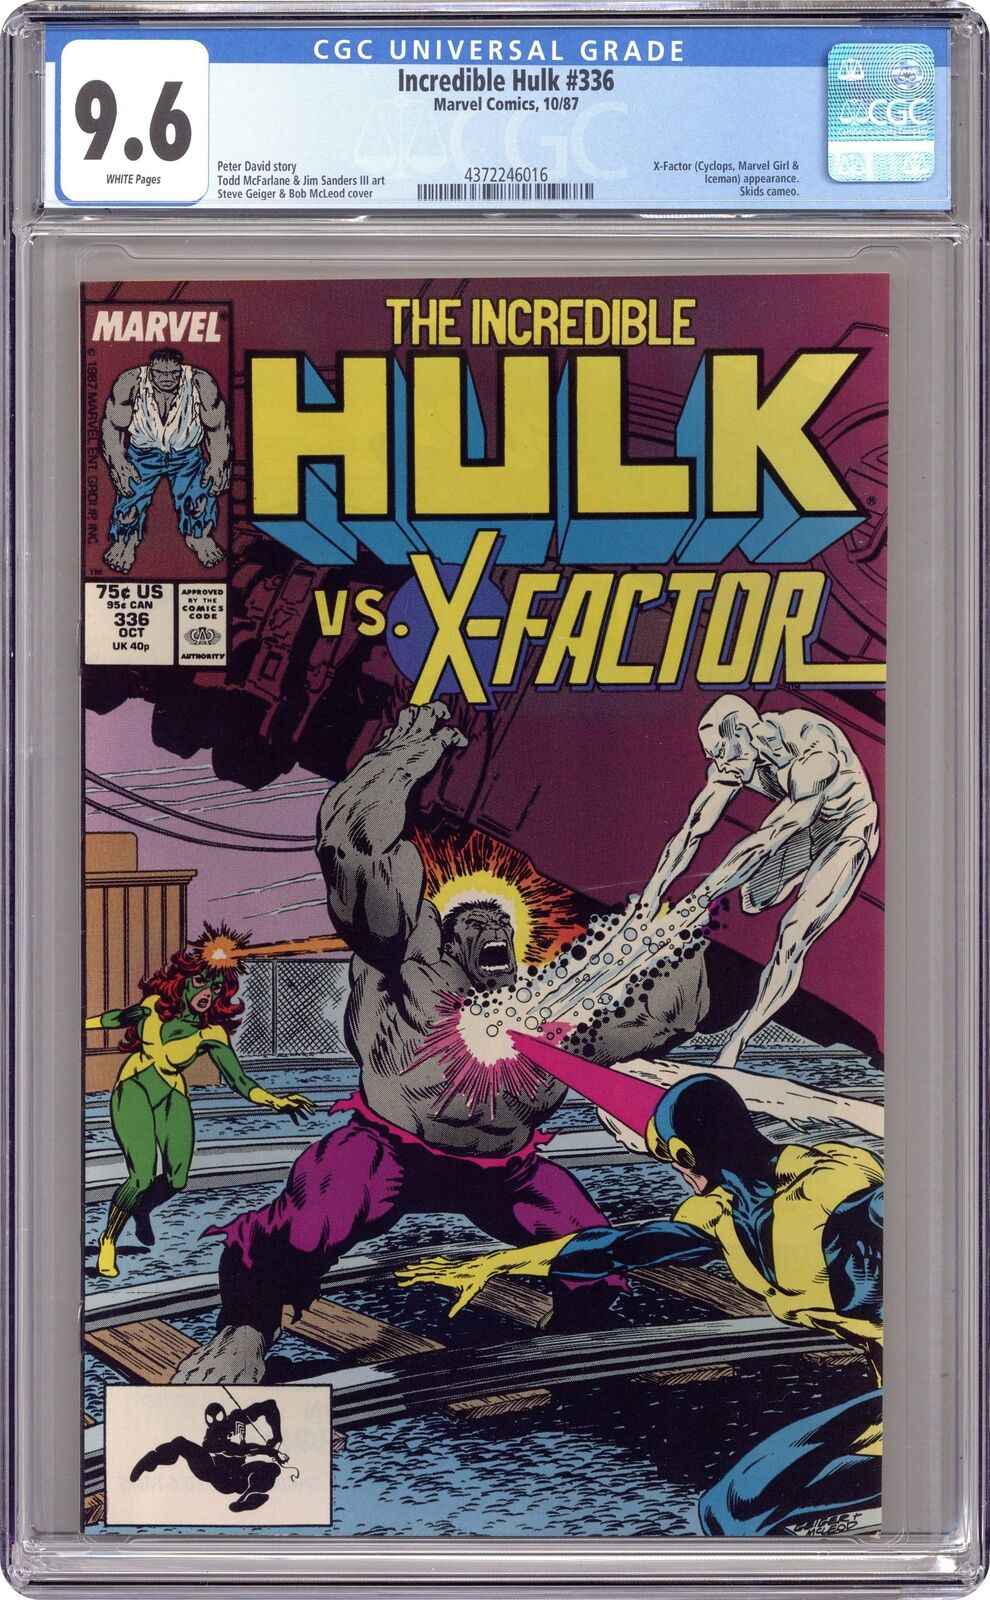 Incredible Hulk #336 CGC 9.6 1987 4372246016